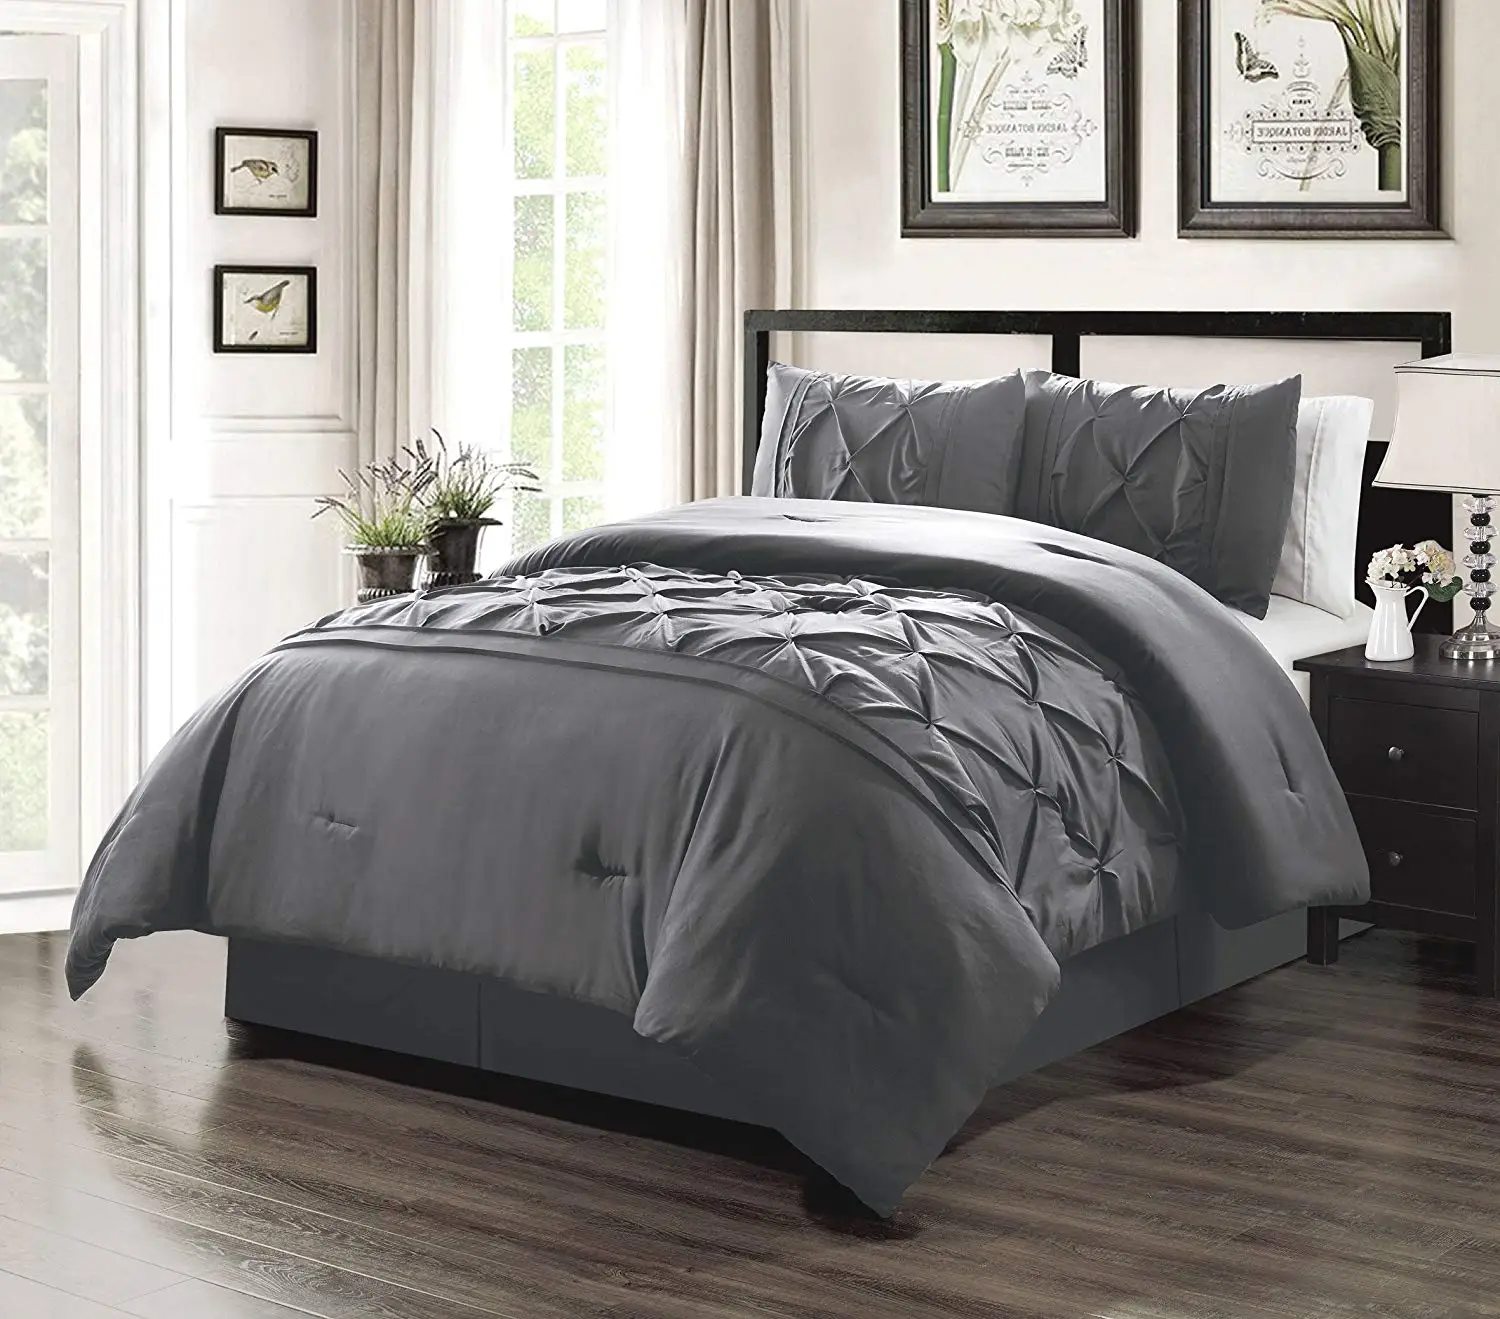 Cheap Dark Grey Comforter Set, find Dark Grey Comforter Set deals on ...